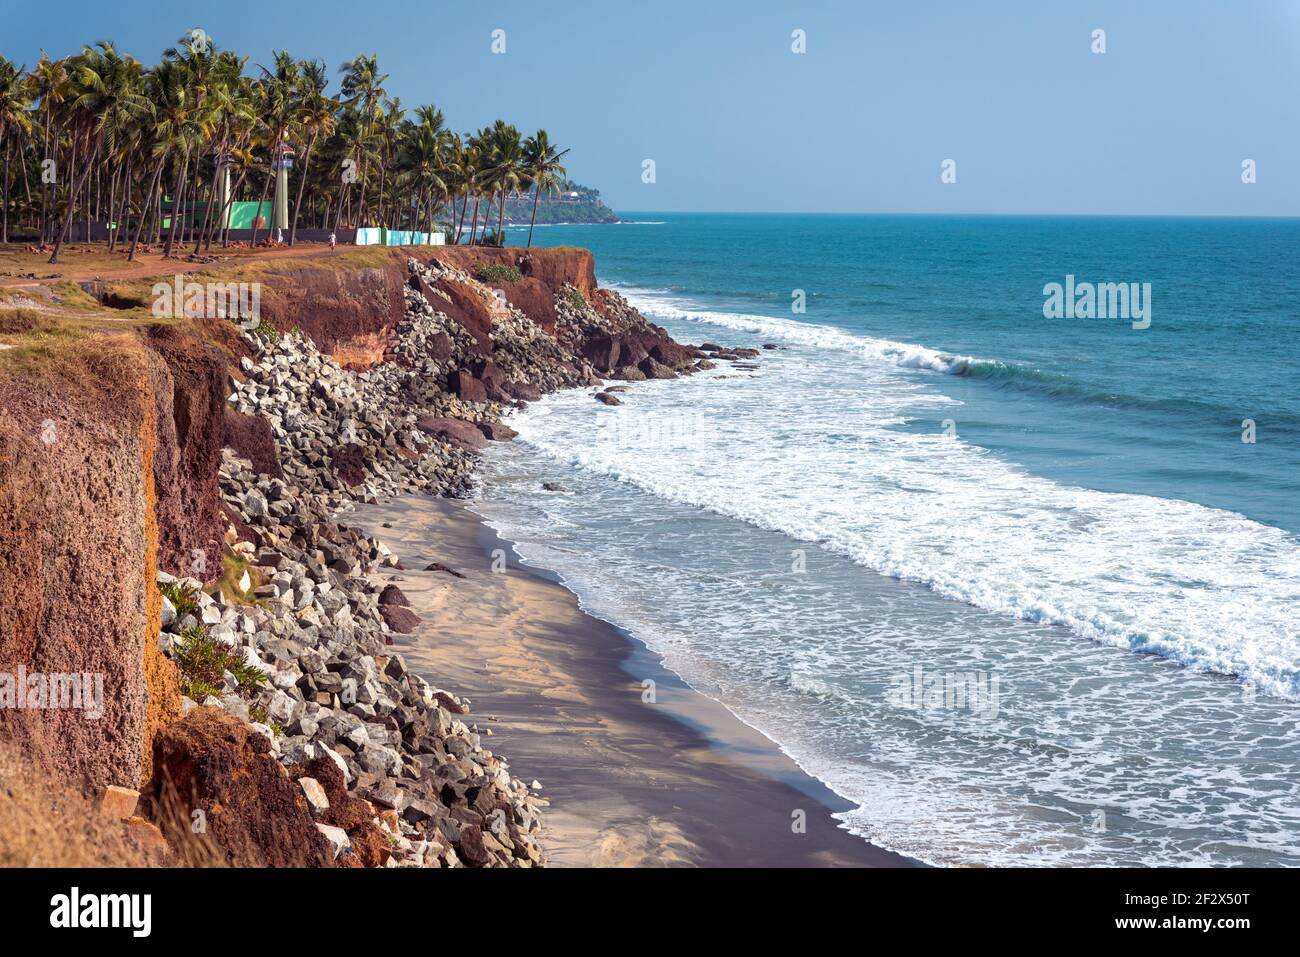 Varkala, Kerala, India. Steep coast, palm trees and sea horizon. 2 km to the North from the Central Beach. Stock Photo